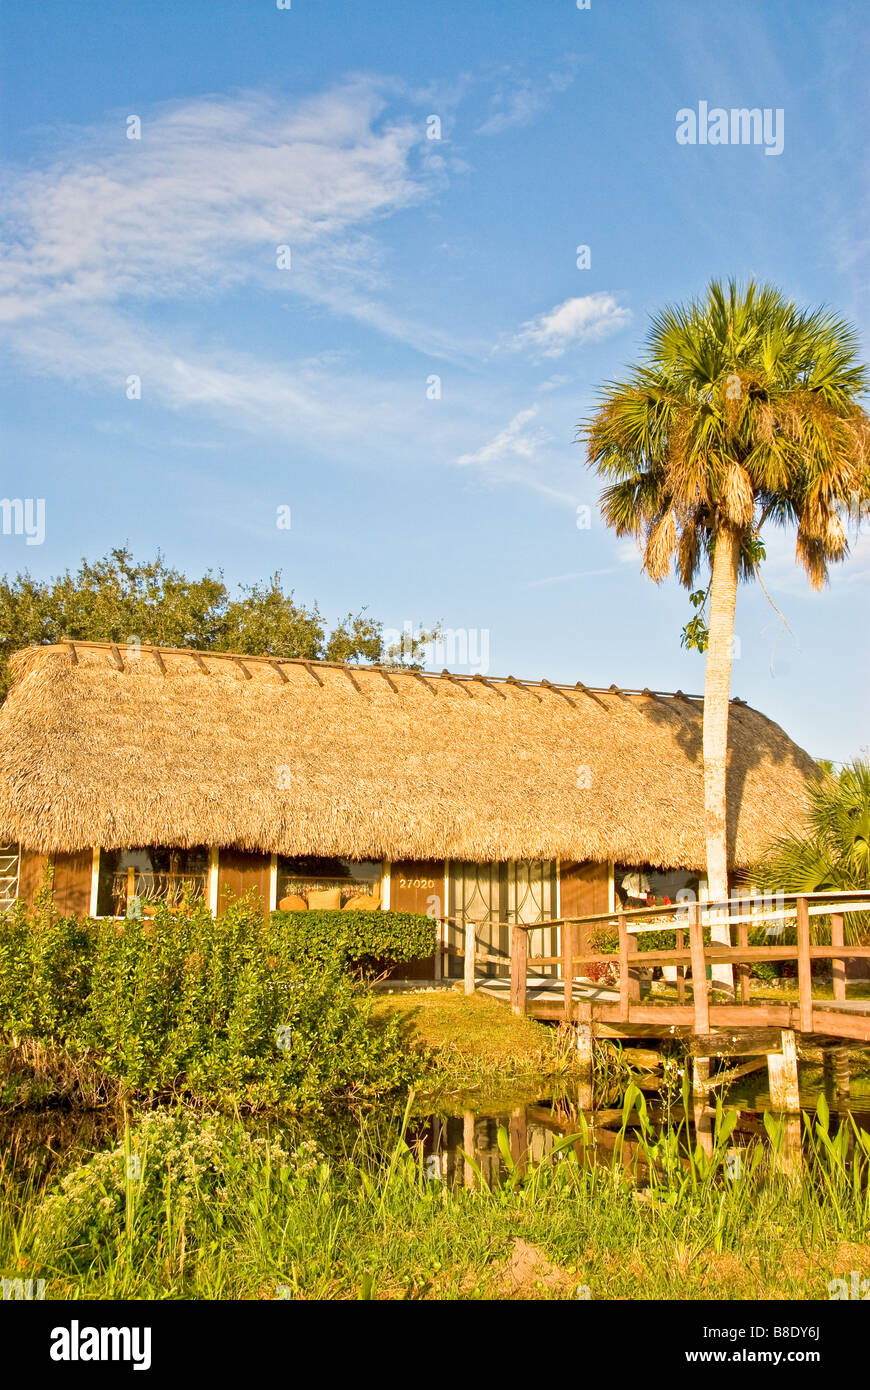 Everglades de Floride Tamiami Trail US 41 village indien Miccosukee Seminole bâtiment chaume et palm tree Banque D'Images